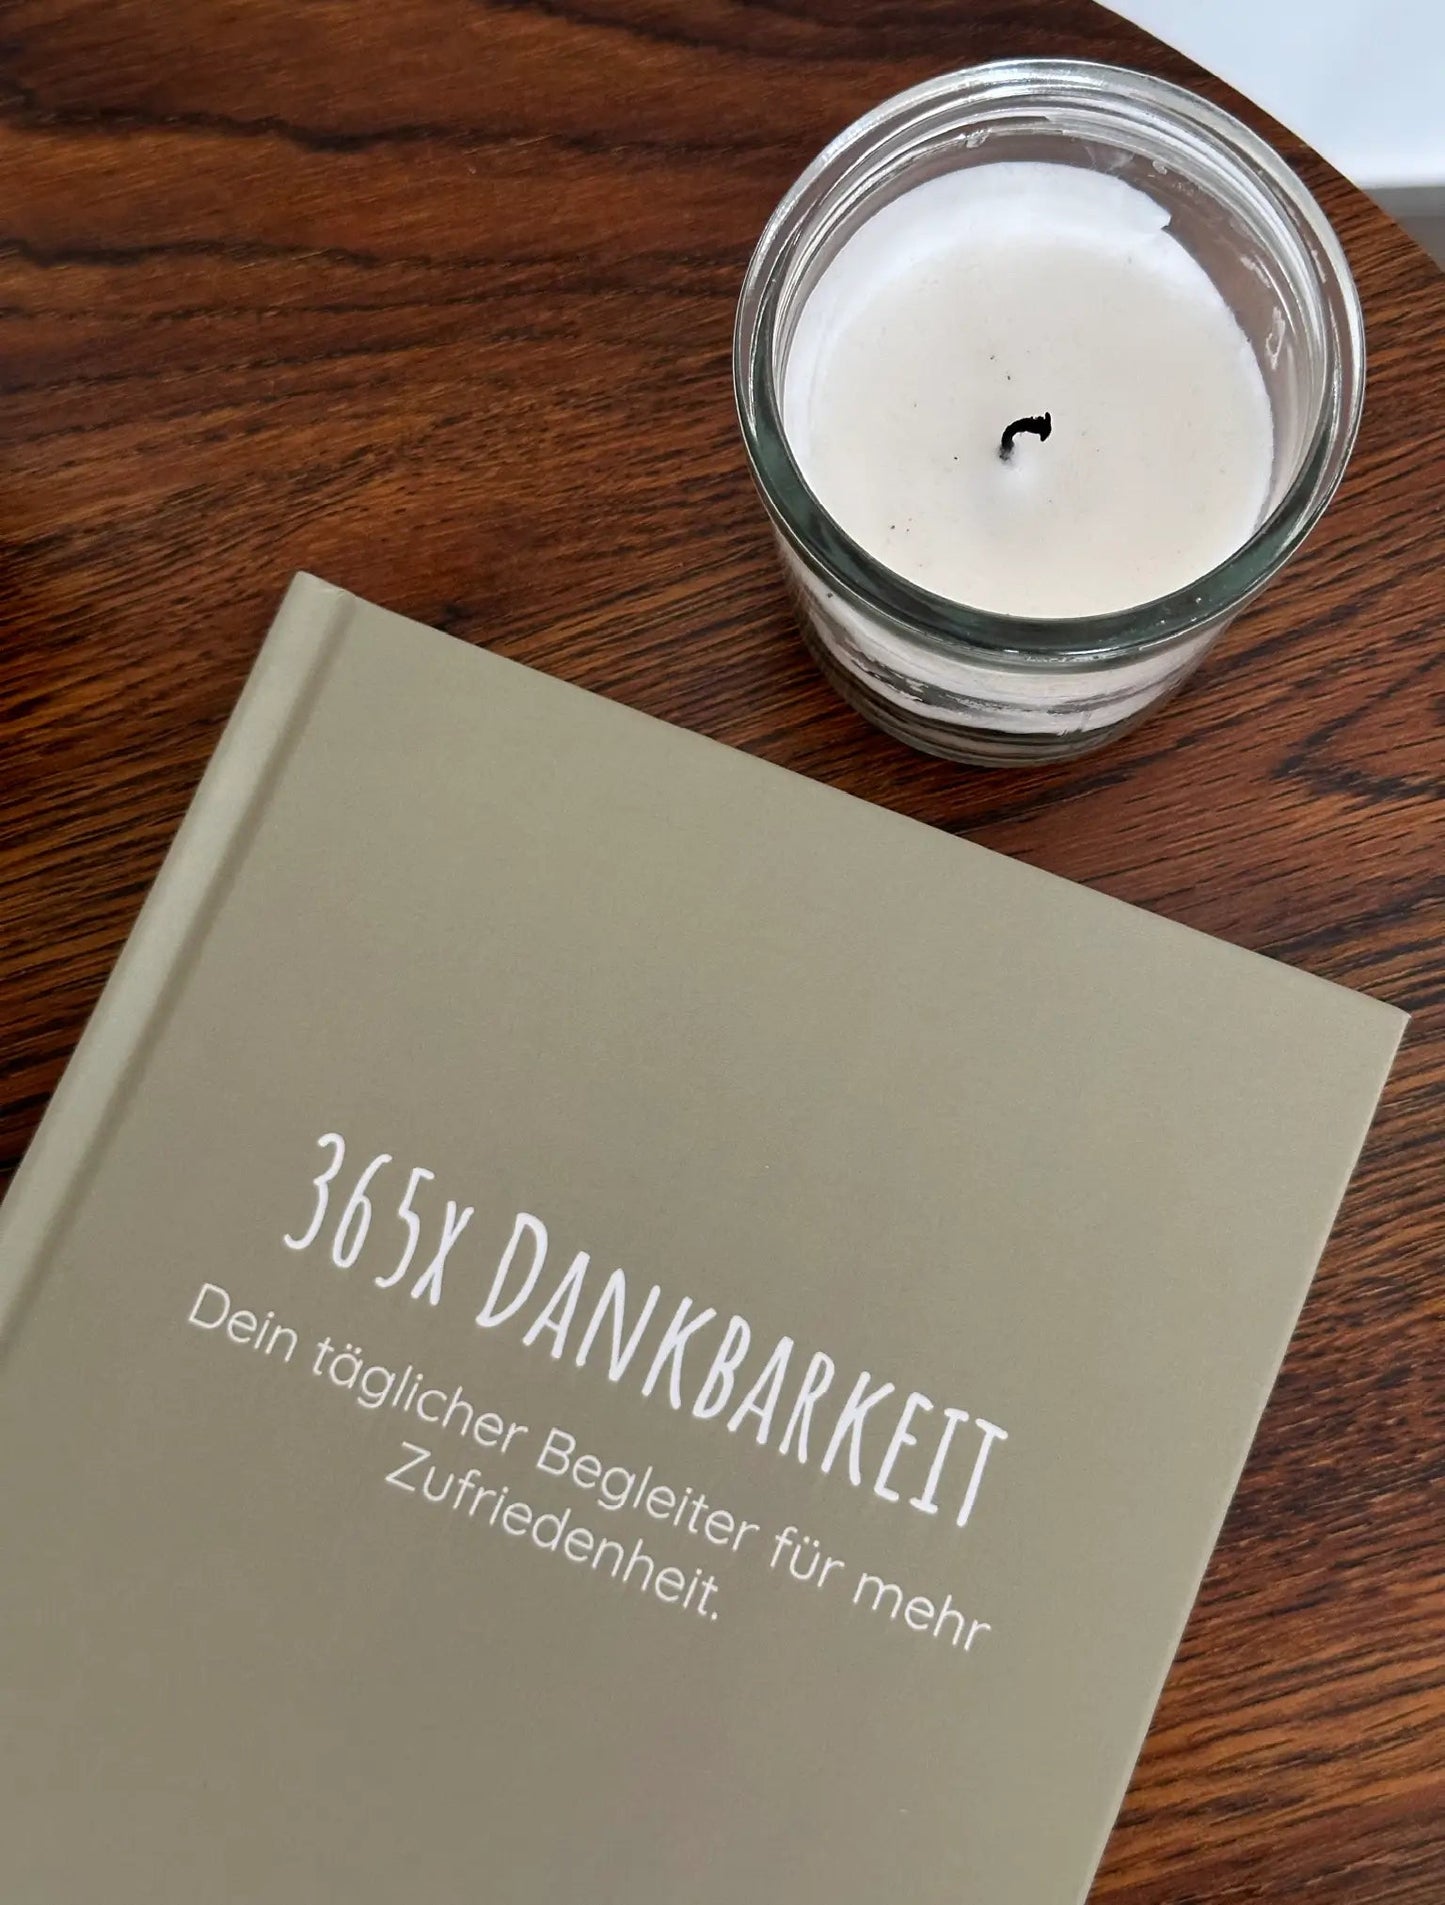 Dankbarkeitstagebuch | Achtsamkeitstagebuch | Coffee Table Book | Hardcover | 365 Tage | Perfekt als Geschenk - Fanjatastisch